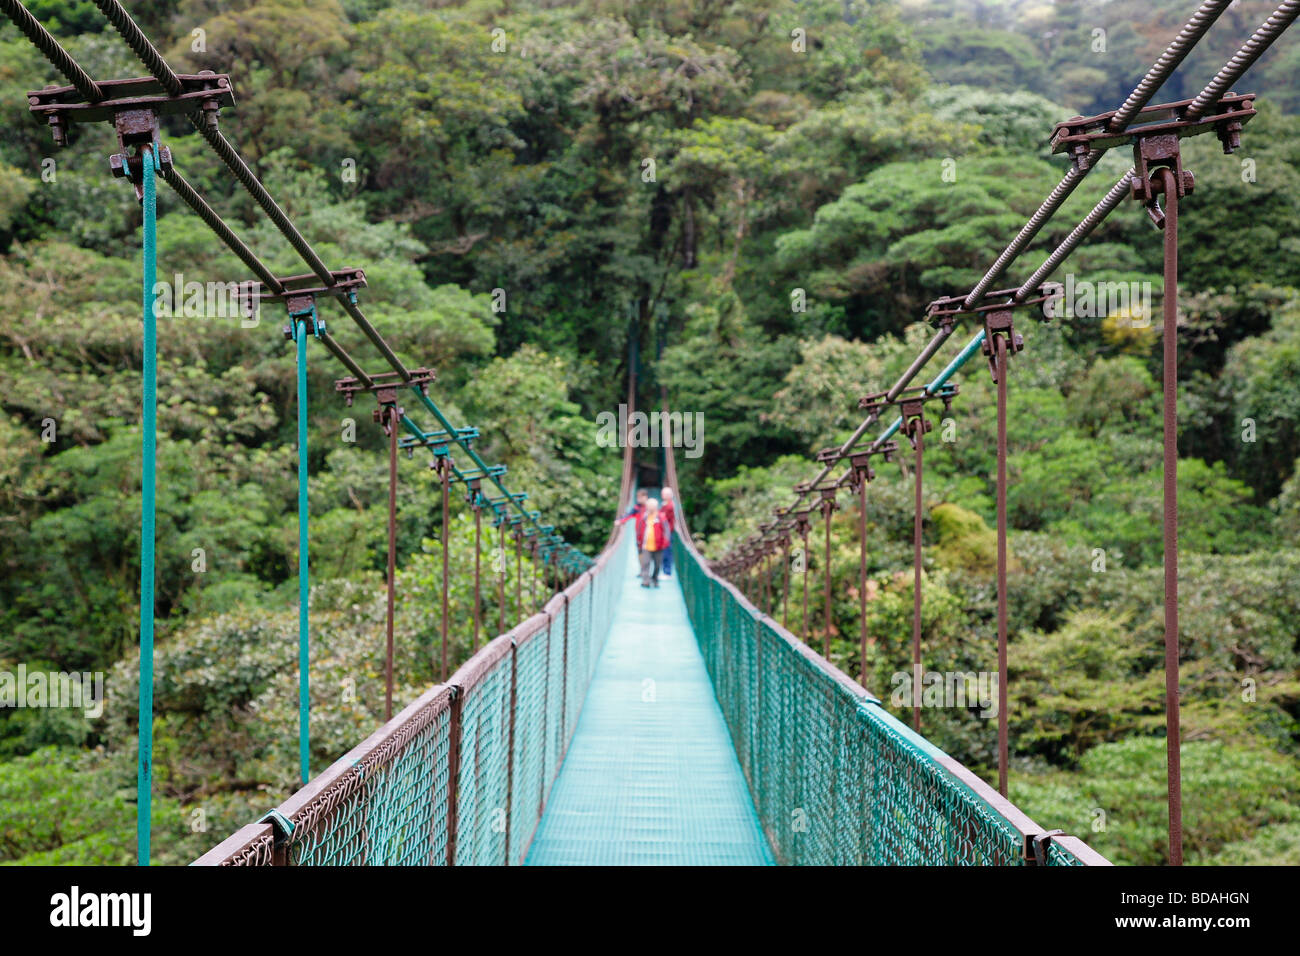 Costa rica monteverde cloud forest national park les randonneurs le long de la forêt tropicale des sky walk l'Amérique latine Banque D'Images